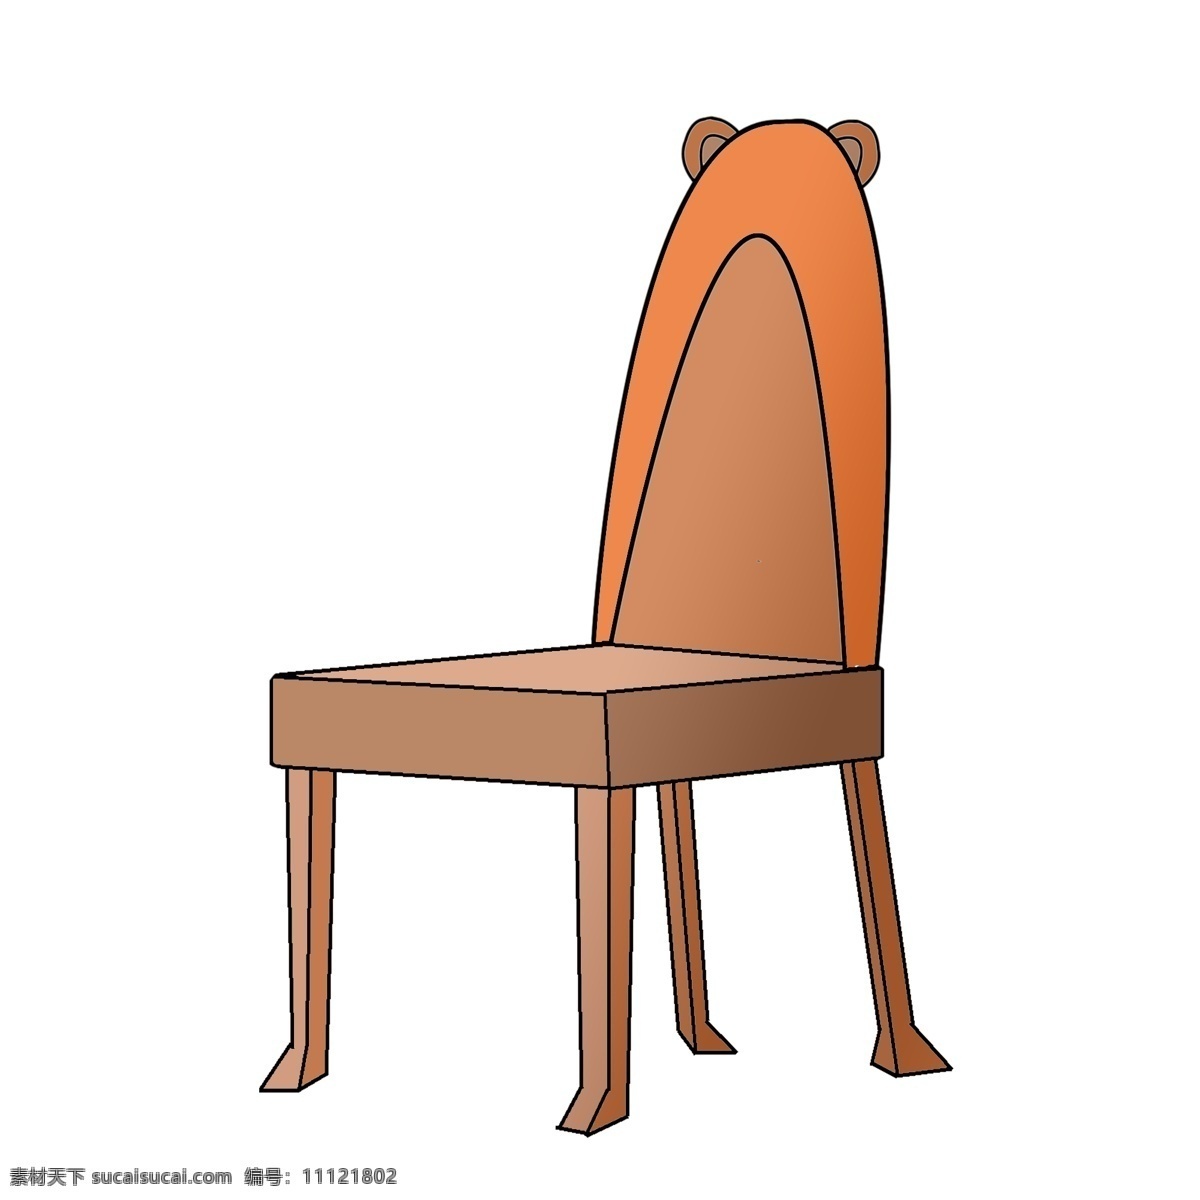 卡通 小 熊 耳朵 椅子 插画 可爱小熊椅子 实木家具家私 棕色的椅子 可爱的椅子 带靠背的椅子 儿童座椅